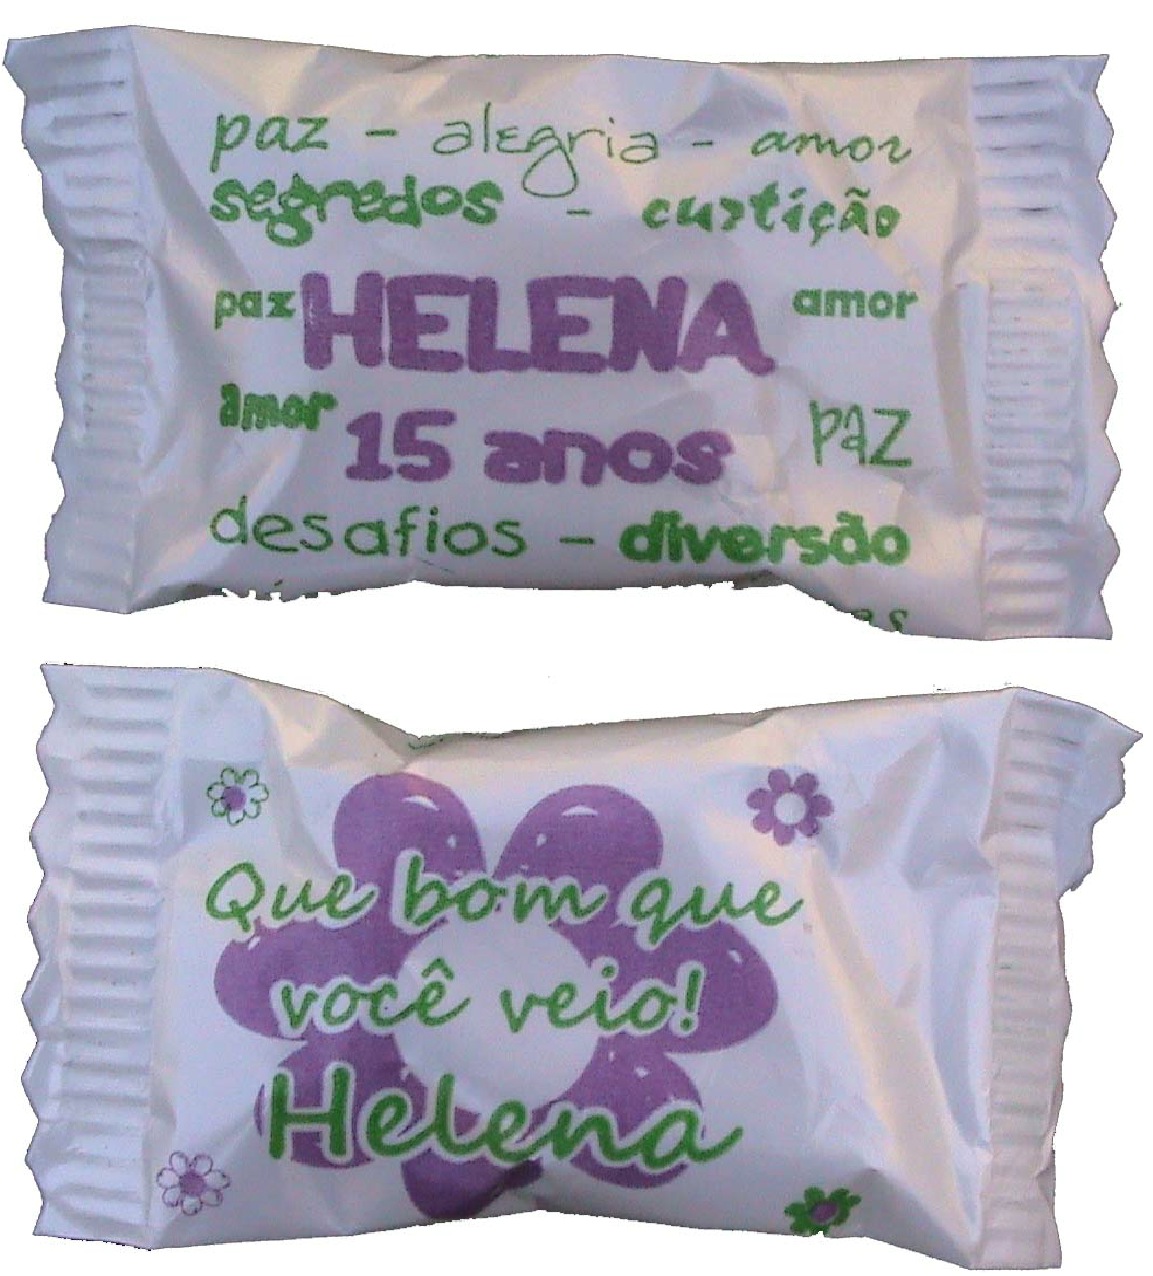 [Balas+Helena.jpg]